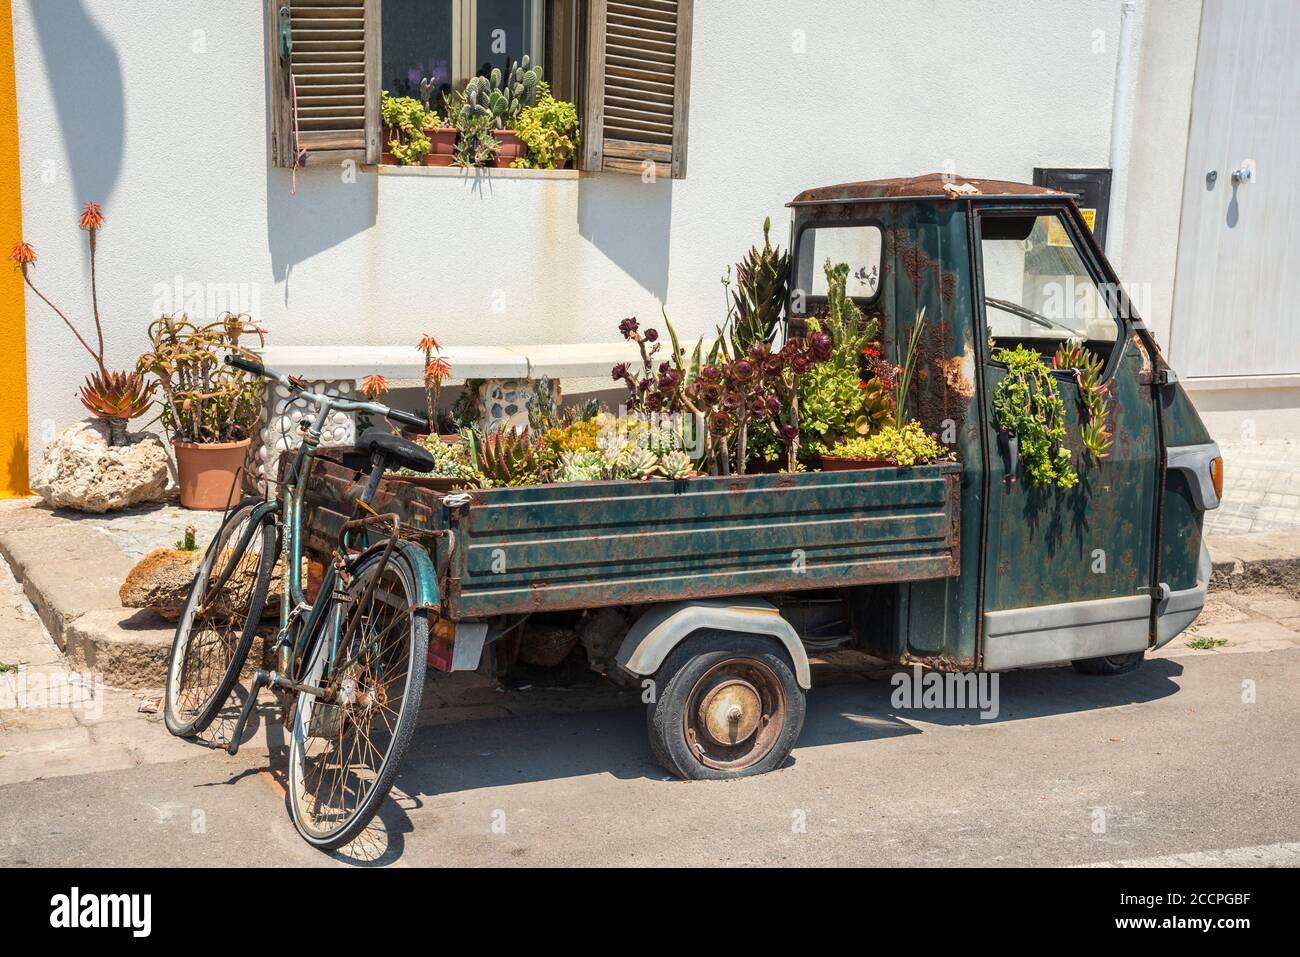 Un viejo recogedor Piaggio de tres ruedas, reutilizado como contenedor para plantas en la ciudad de Gallipoli, sur de Puglia, Italia. Foto de stock